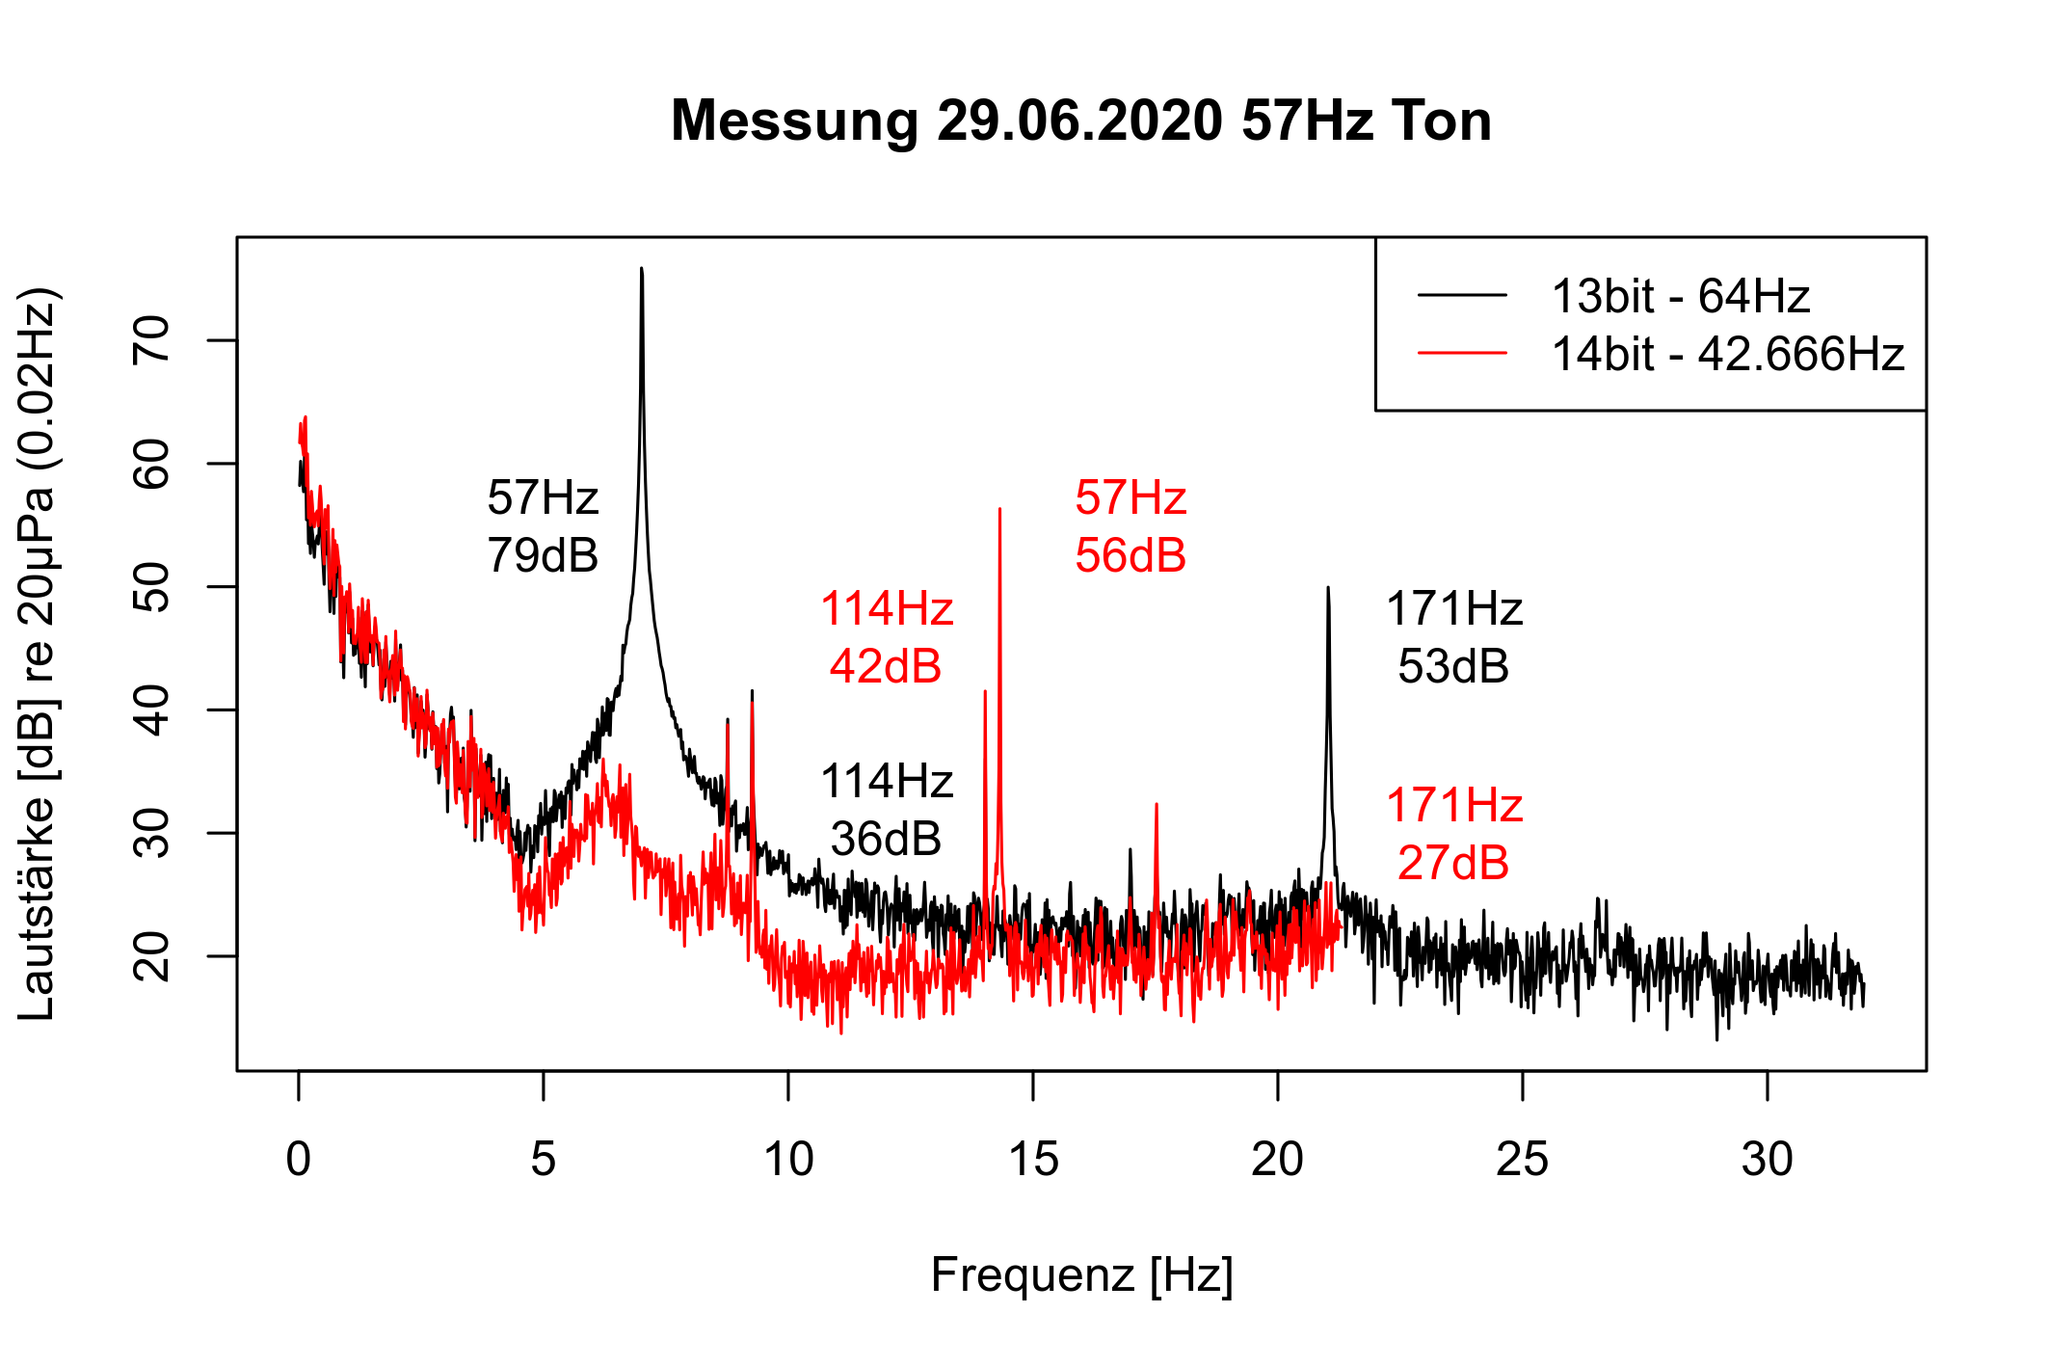 Frequenzspektrum 57Hz bei 64Hz bzw. 42.6666 Messfrequenz